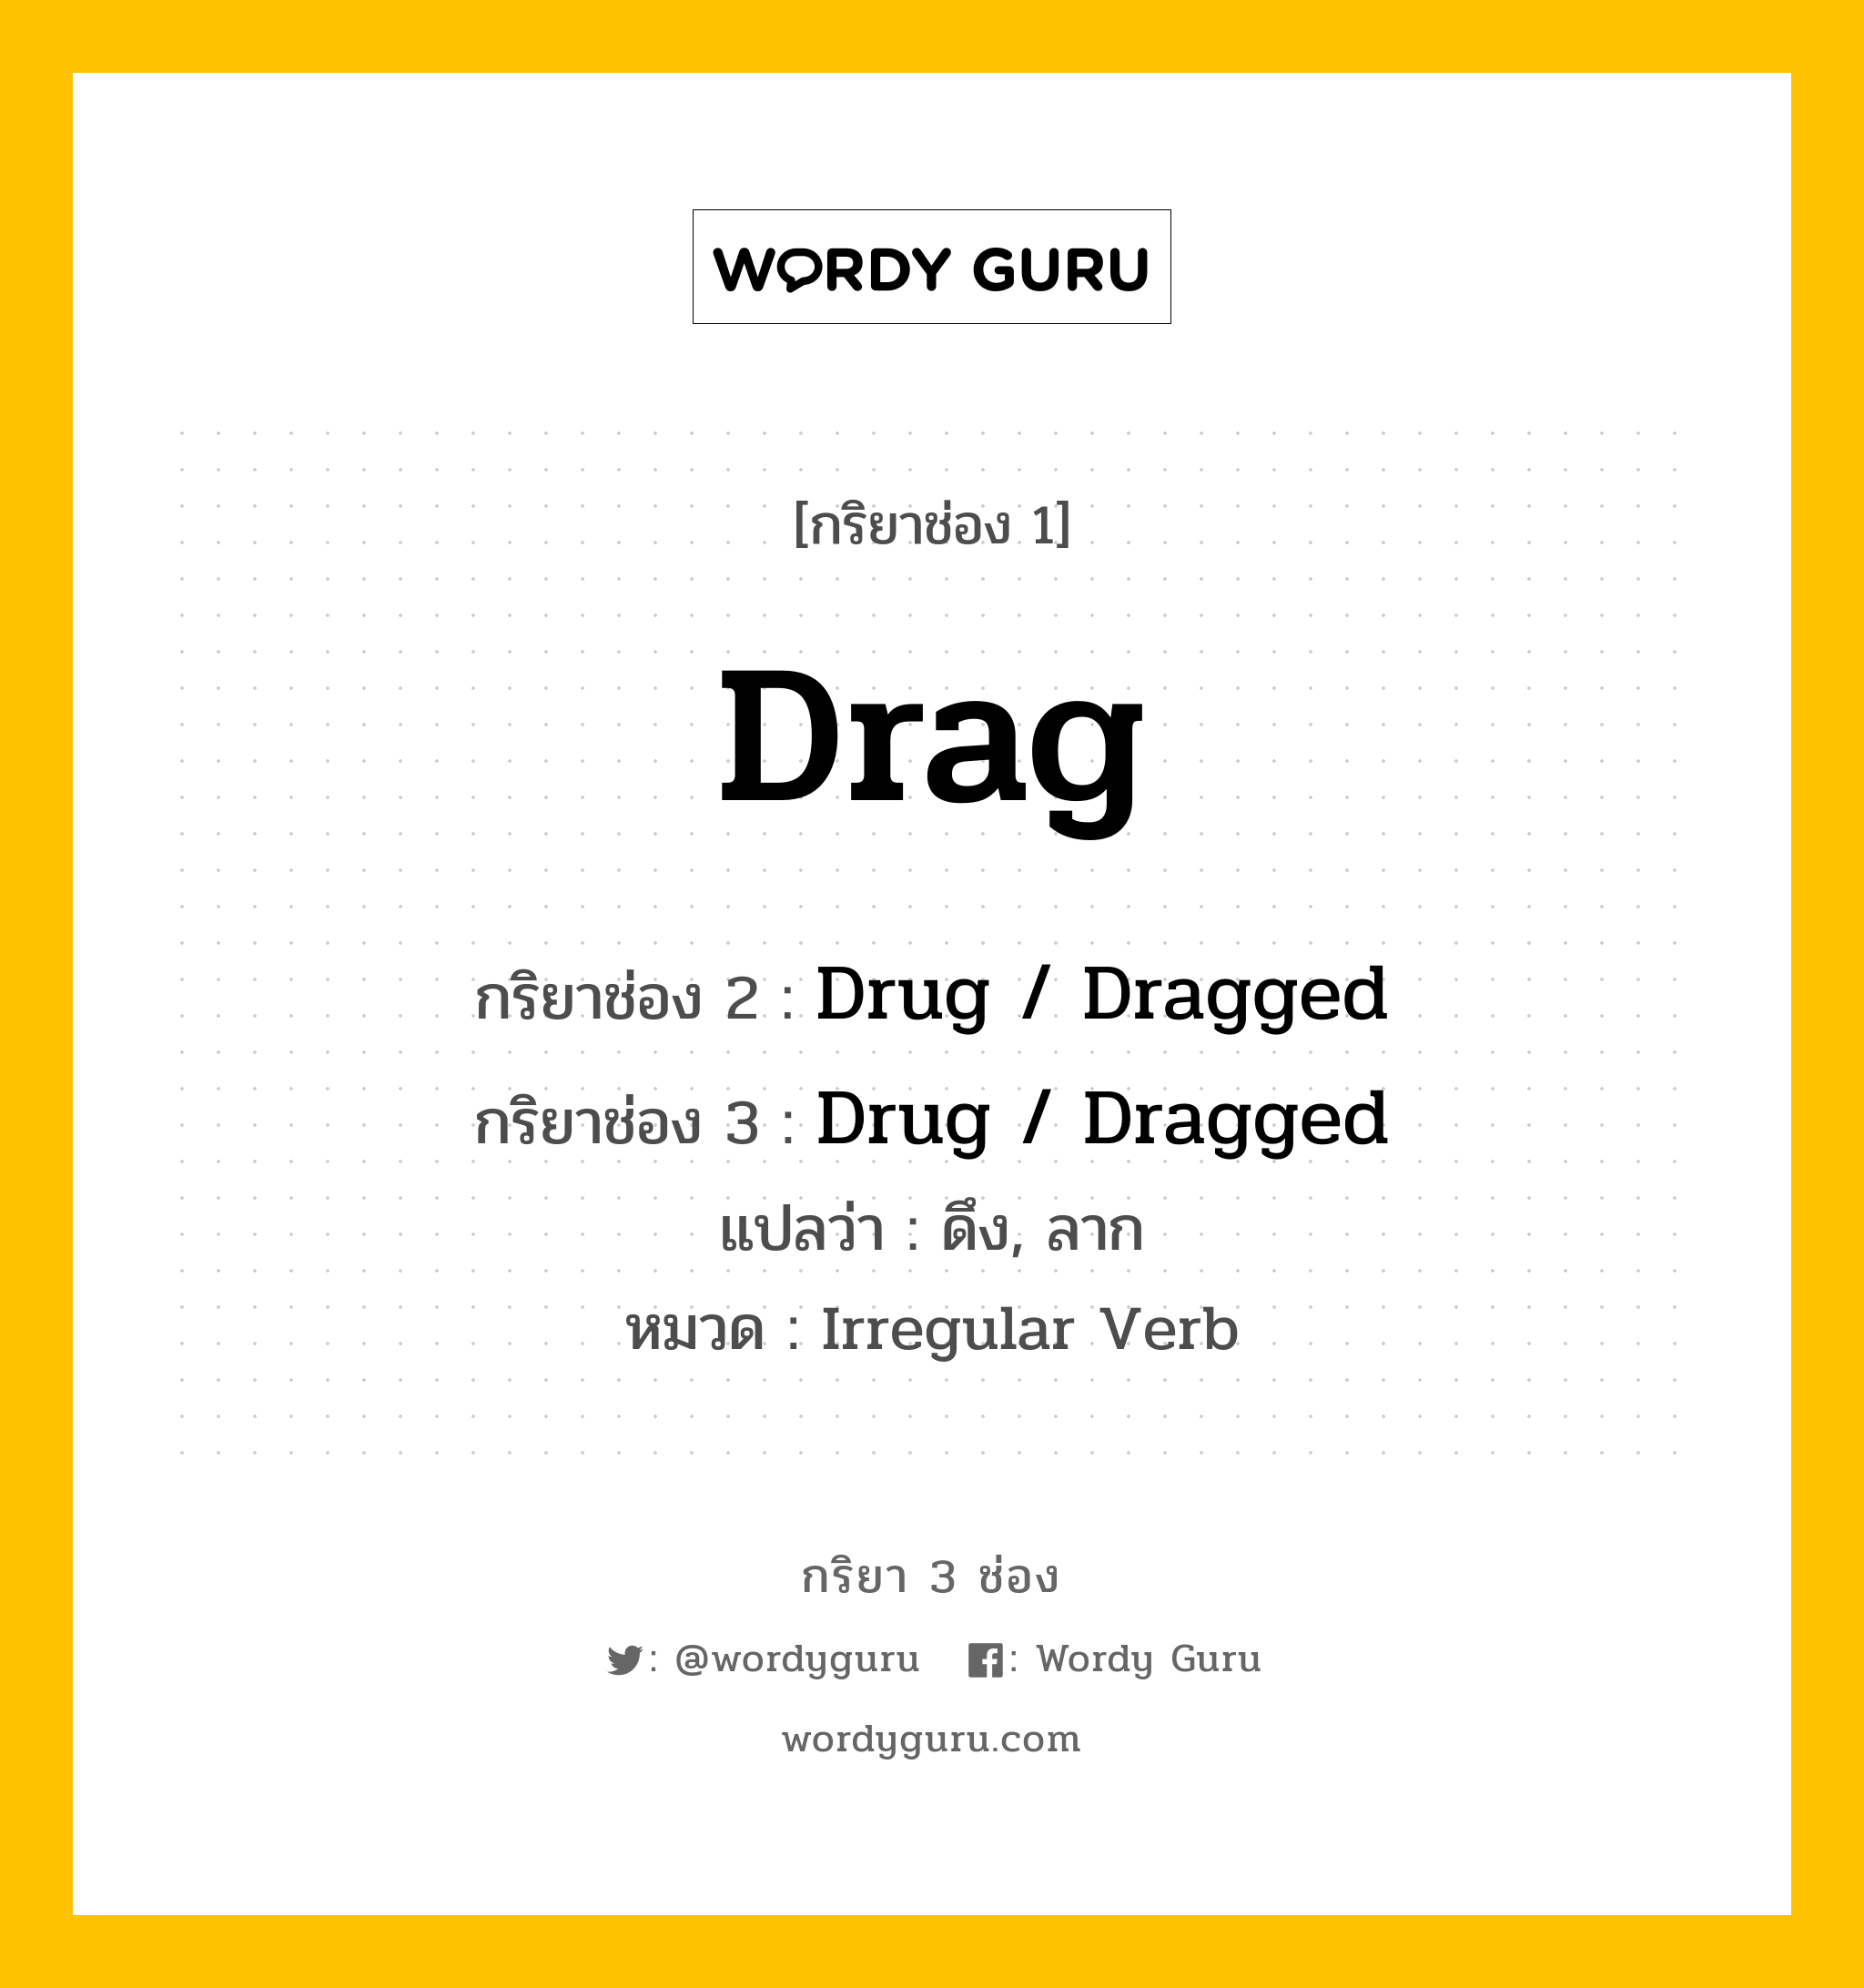 กริยา 3 ช่อง: Drag ช่อง 2 Drag ช่อง 3 คืออะไร, กริยาช่อง 1 Drag กริยาช่อง 2 Drug / Dragged กริยาช่อง 3 Drug / Dragged แปลว่า ดึง, ลาก หมวด Irregular Verb หมวด Irregular Verb